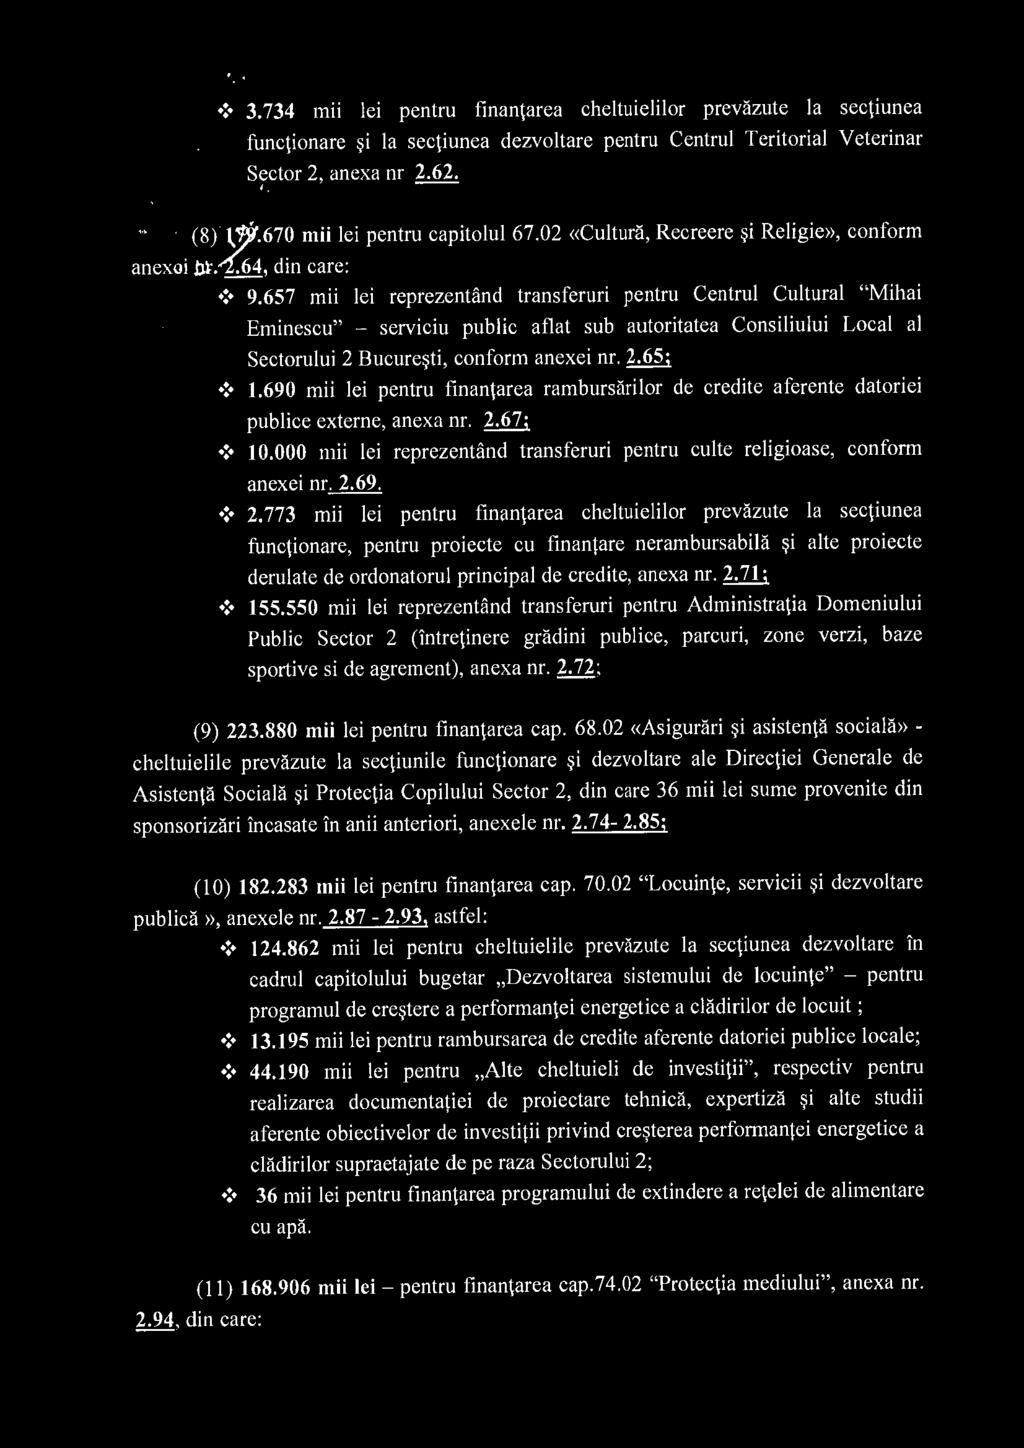 657 mii lei reprezentand transferuri pentru Centrul Cultural "Mihai Eminescu" - serviciu public aflat sub autoritatea Consiliului Local al Sectorului 2 Bucure~ti, conform anexei nr. 2.65;! 1.